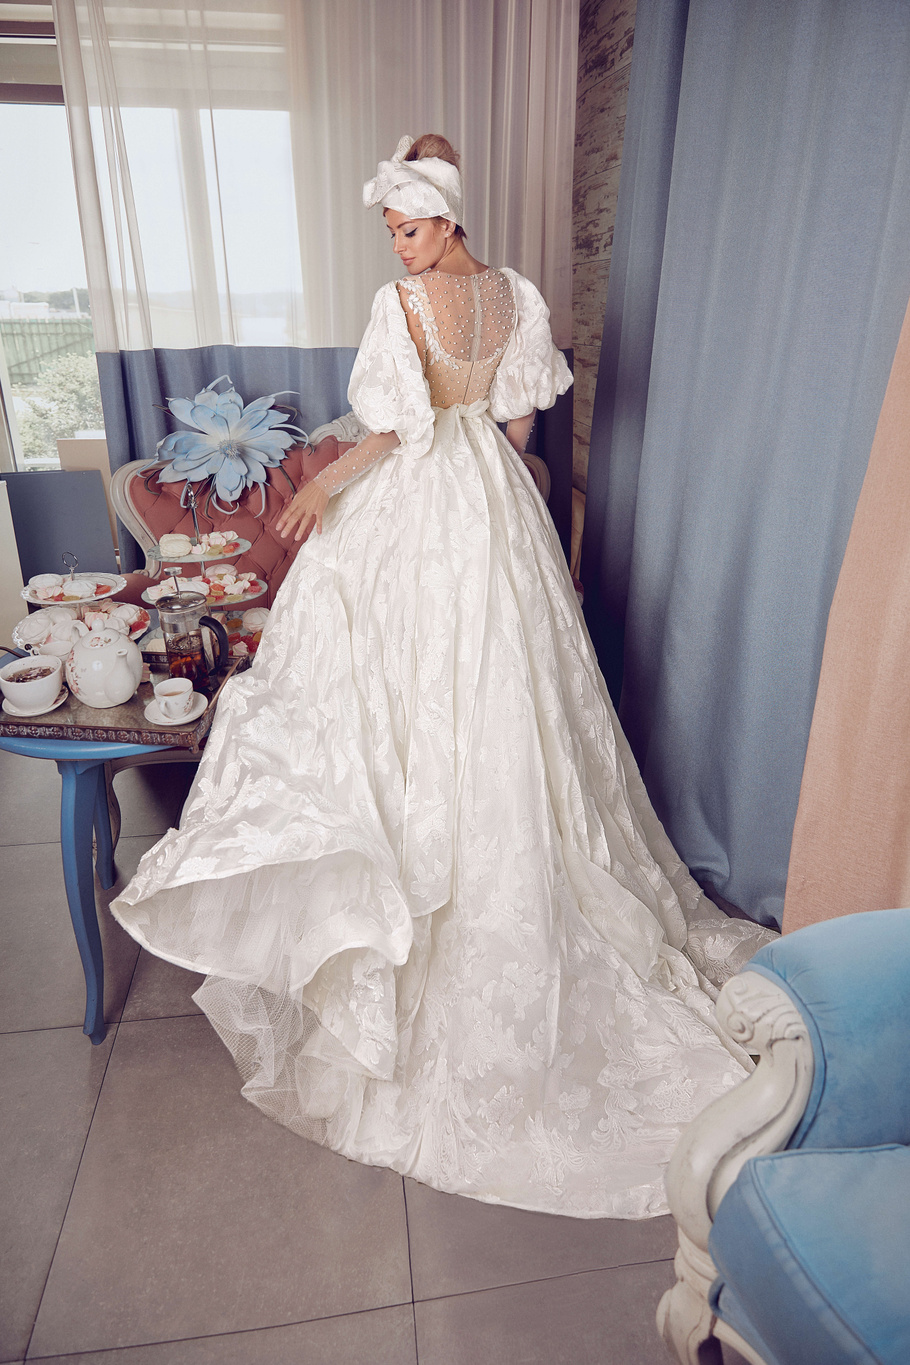 Купить свадебное платье «Валькирия» Бламмо Биамо из коллекции Свит Лайф 2021 года в Нижнем Новгороде